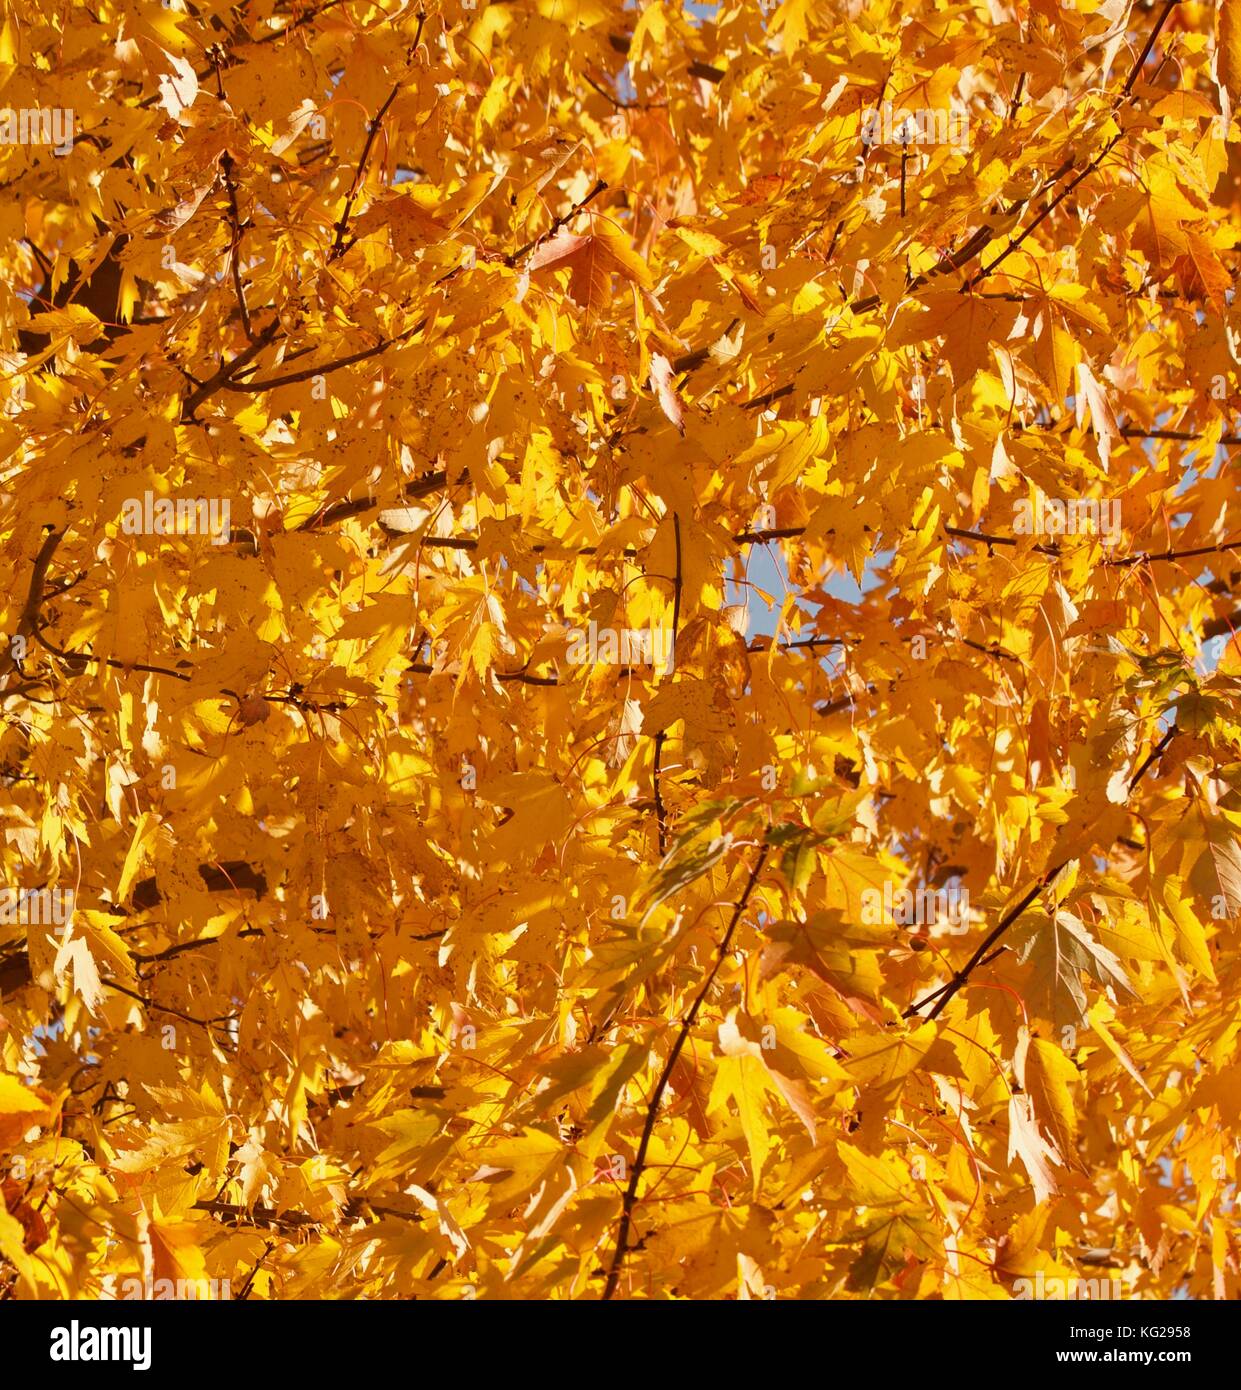 Golden autumn maple leaves Stock Photo